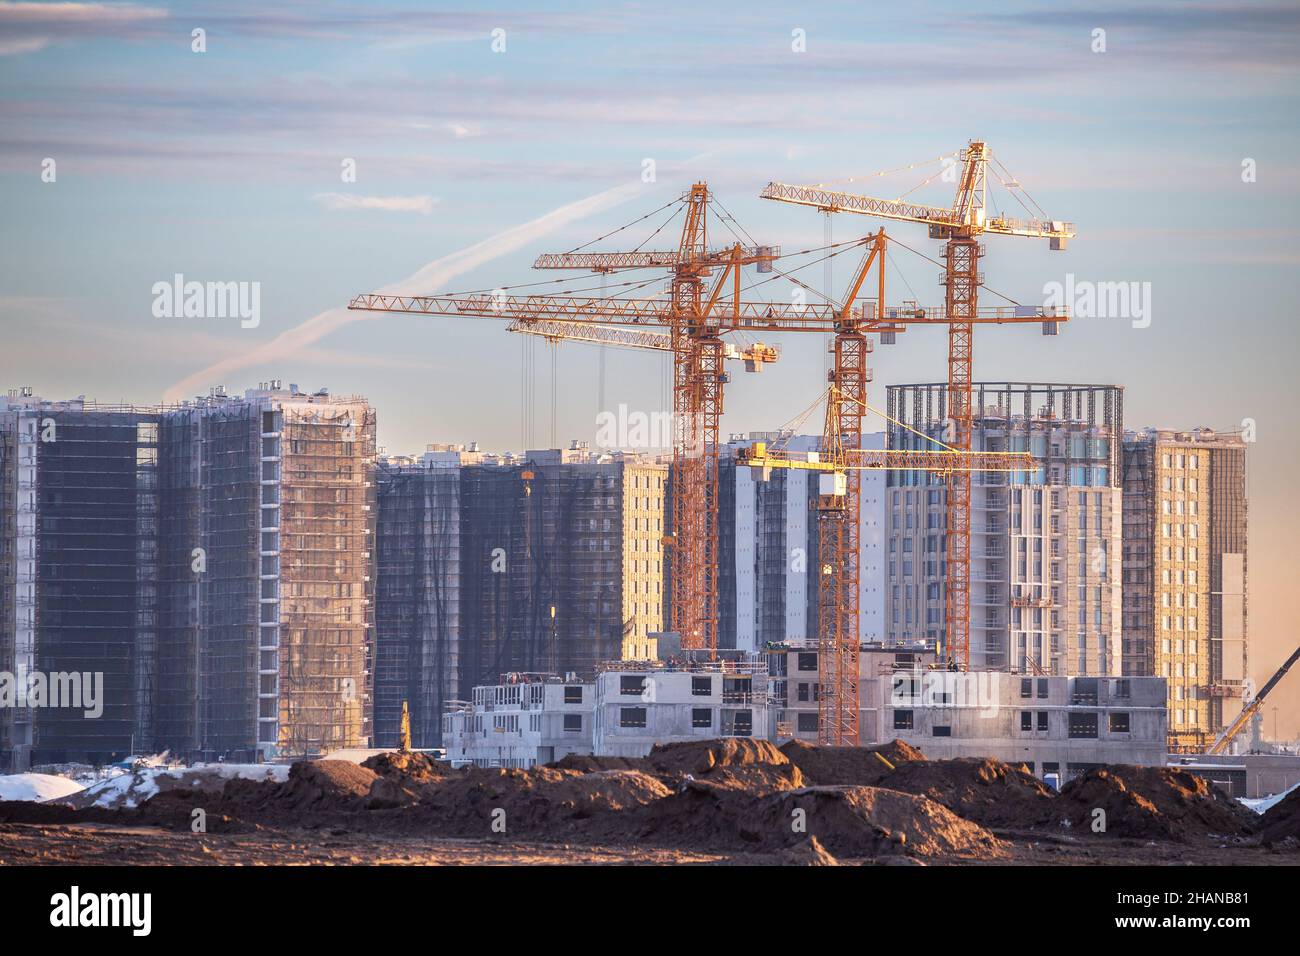 Blick auf eine große Baustelle mit vielen Turmdrehkranen. Neues Wohngebiet einer großen Stadt Stockfoto